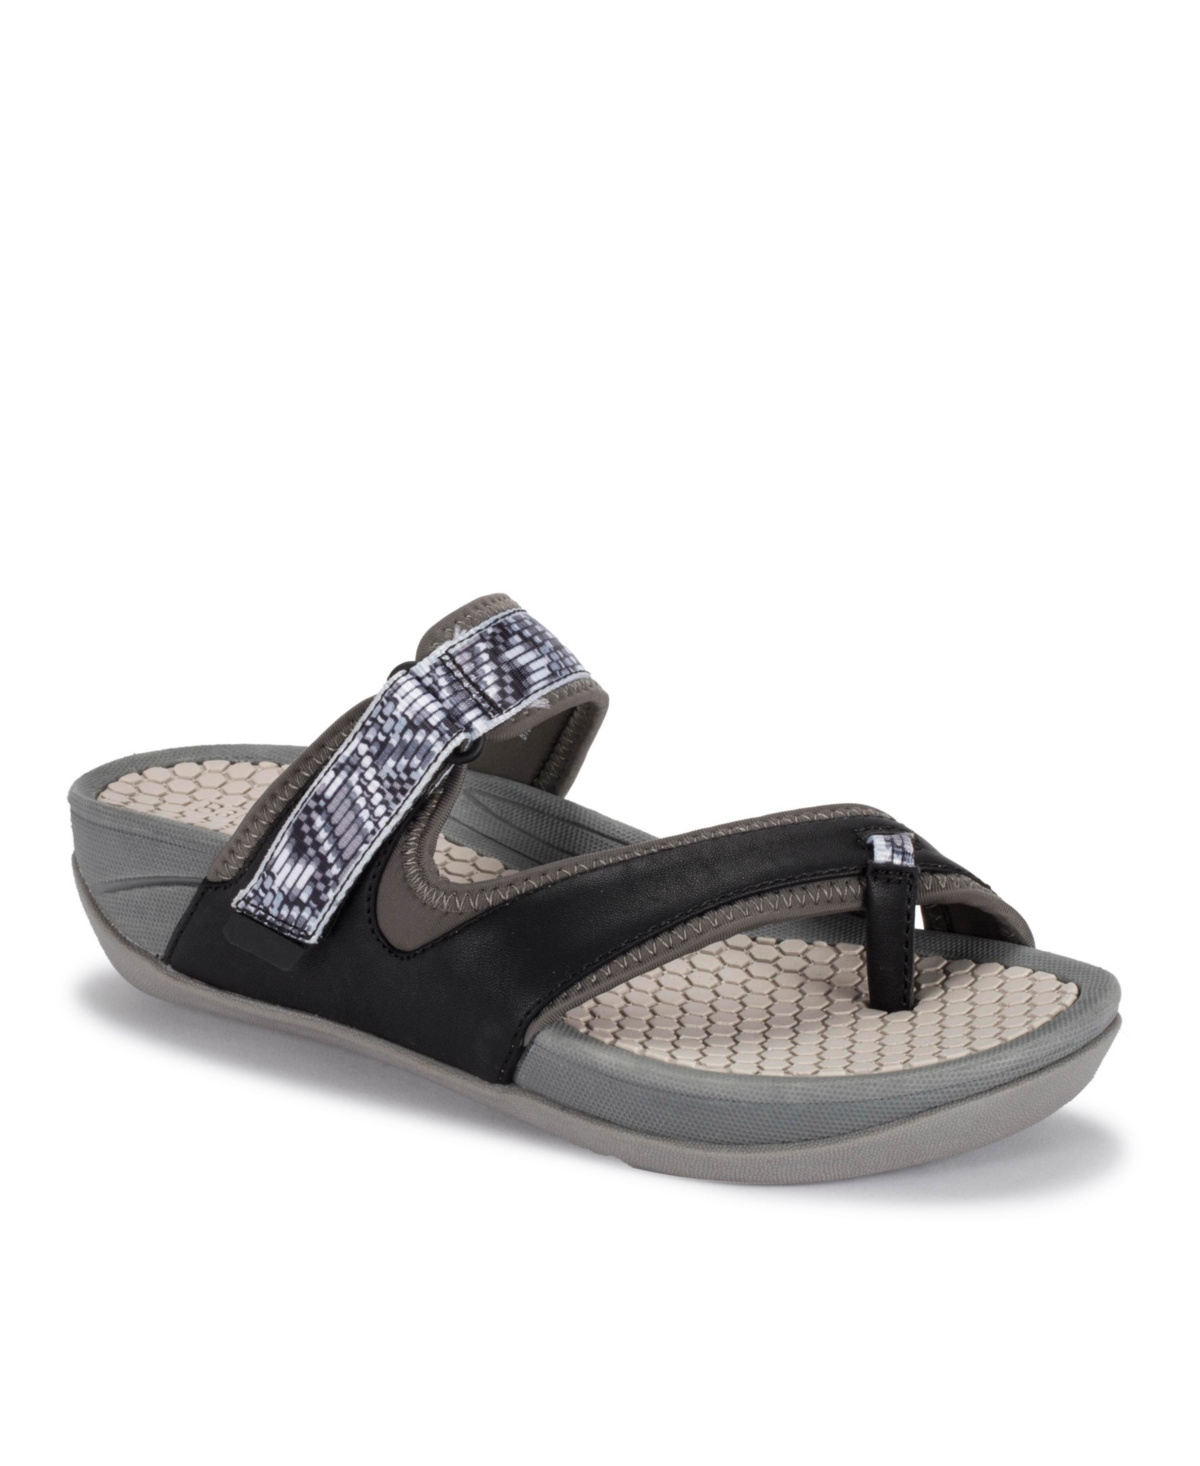 Women's Deserae Rebound Flat Sandals - Dark Gray